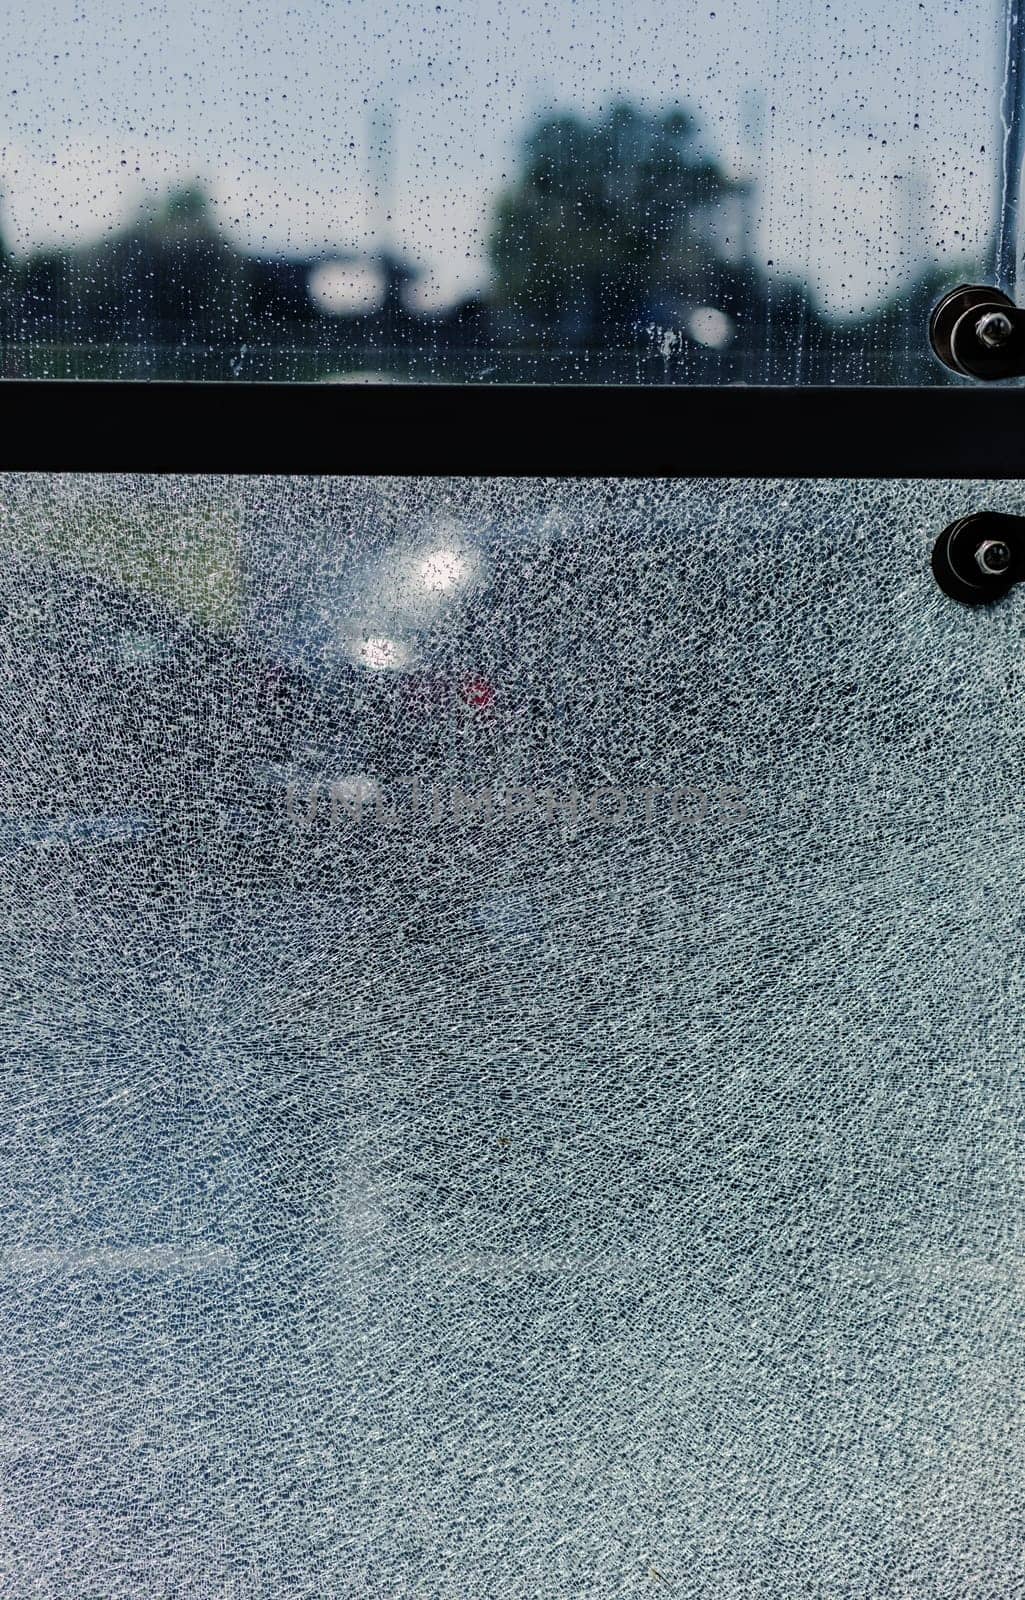 broken glass, background of cracked window. vertical photo